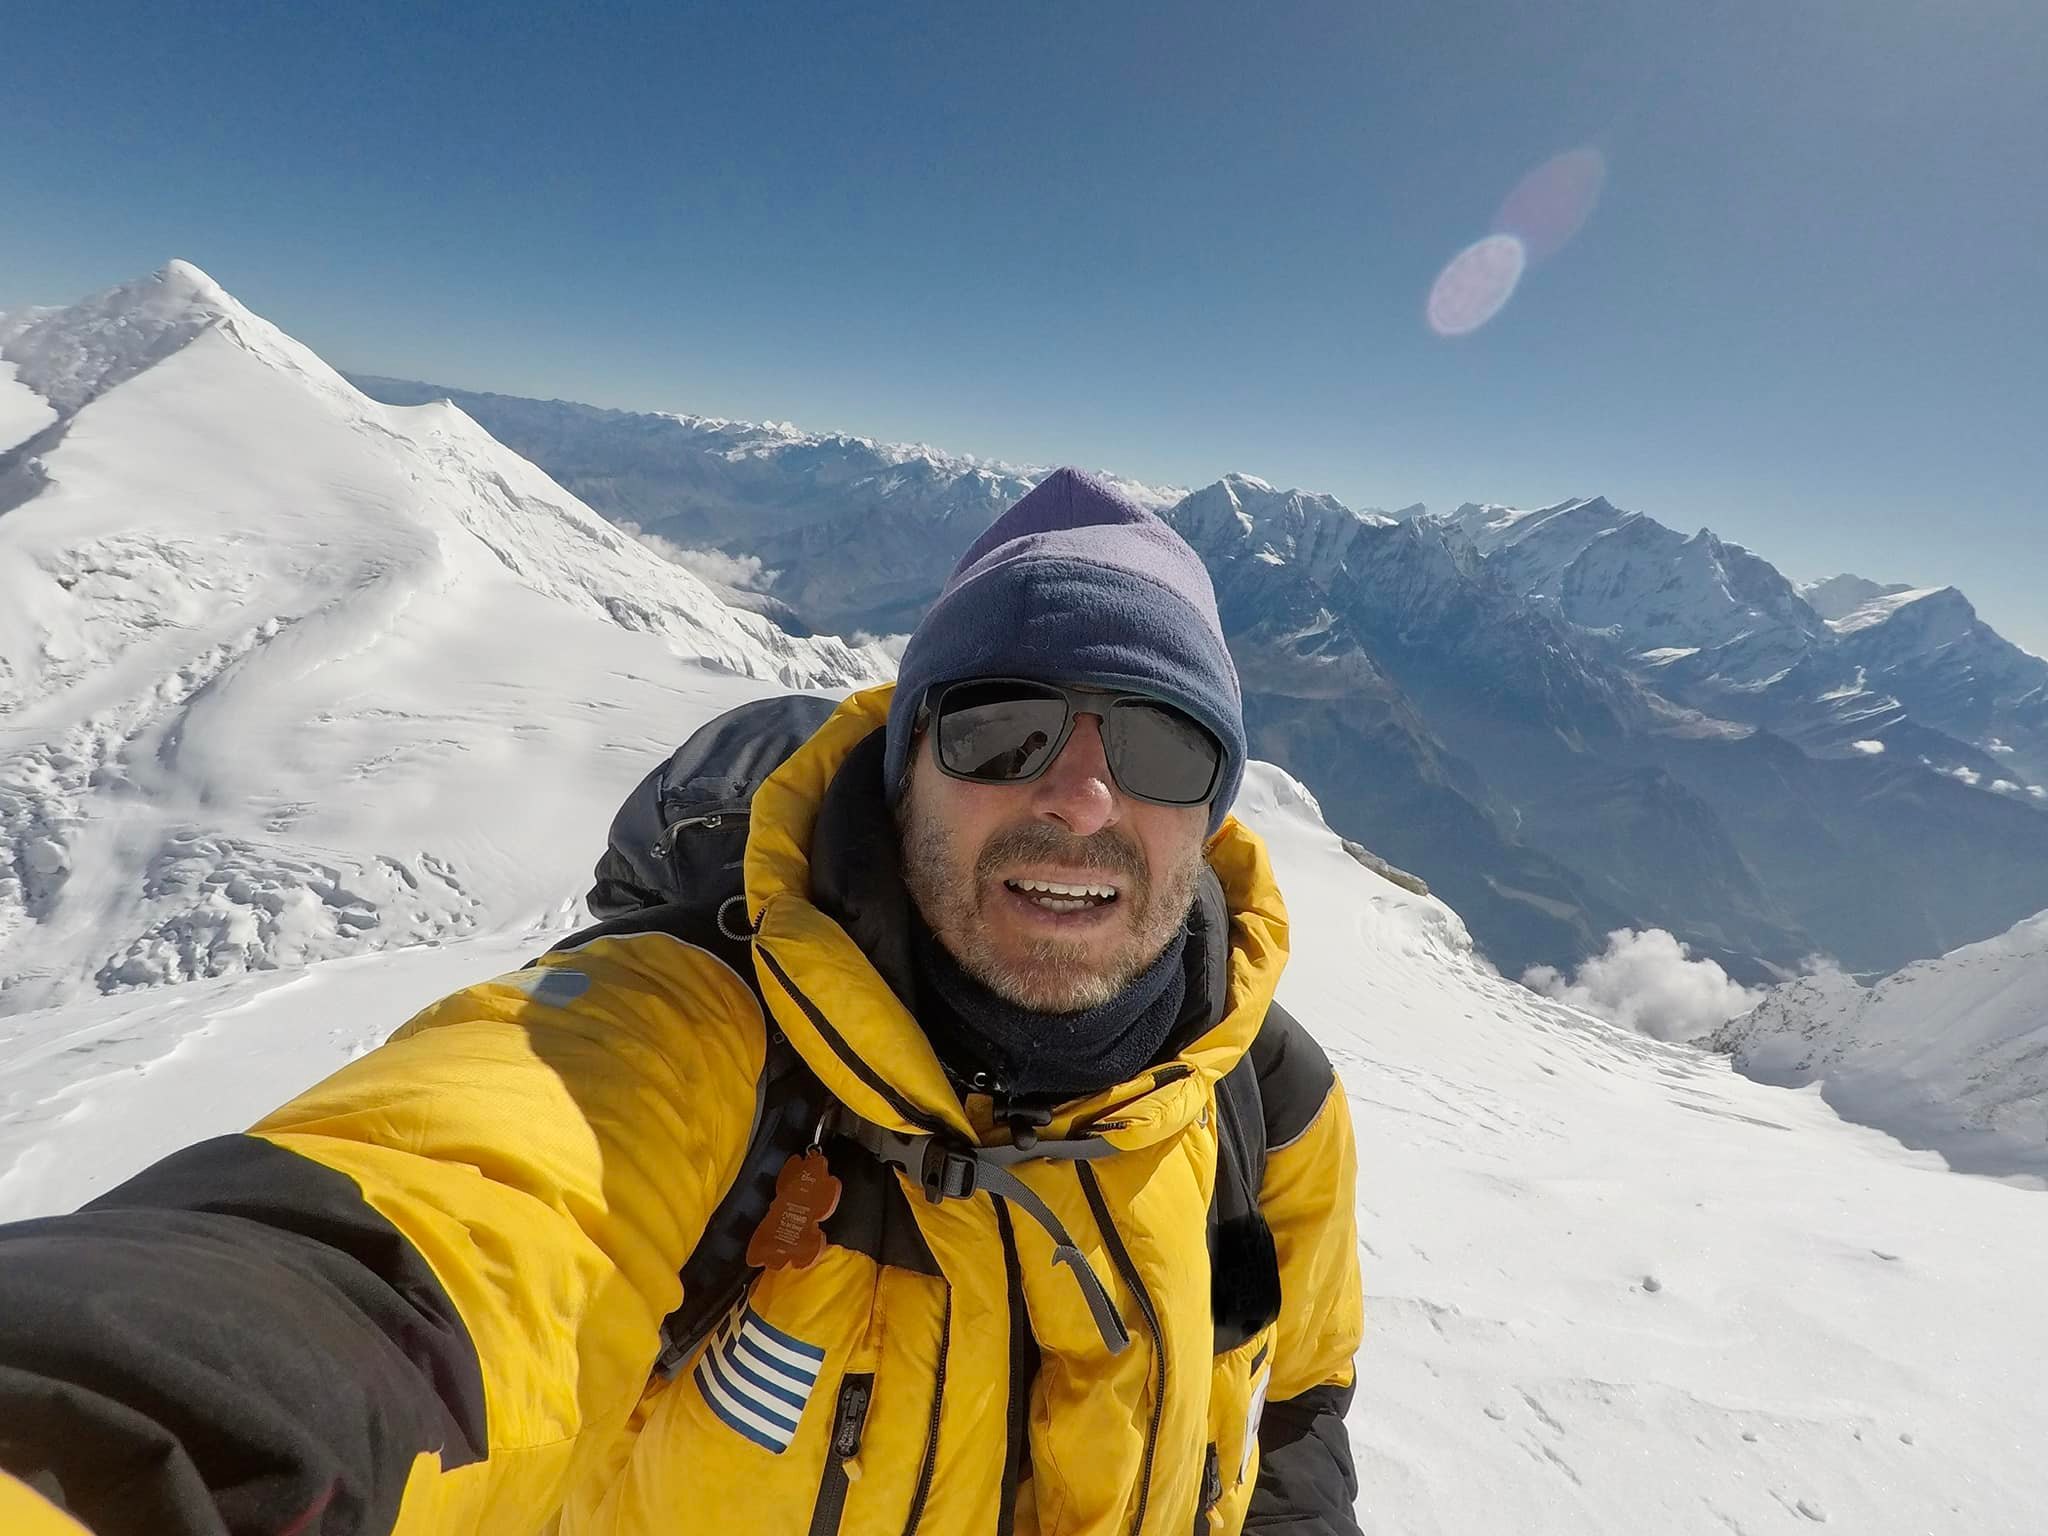 Αντώνης Συκάρης: Ραγίζει καρδιές ο γιος του ορειβάτη – “Πιστεύω ότι σε λίγα λεπτά θα εμφανιστεί κι όλο αυτό είναι αστείο”